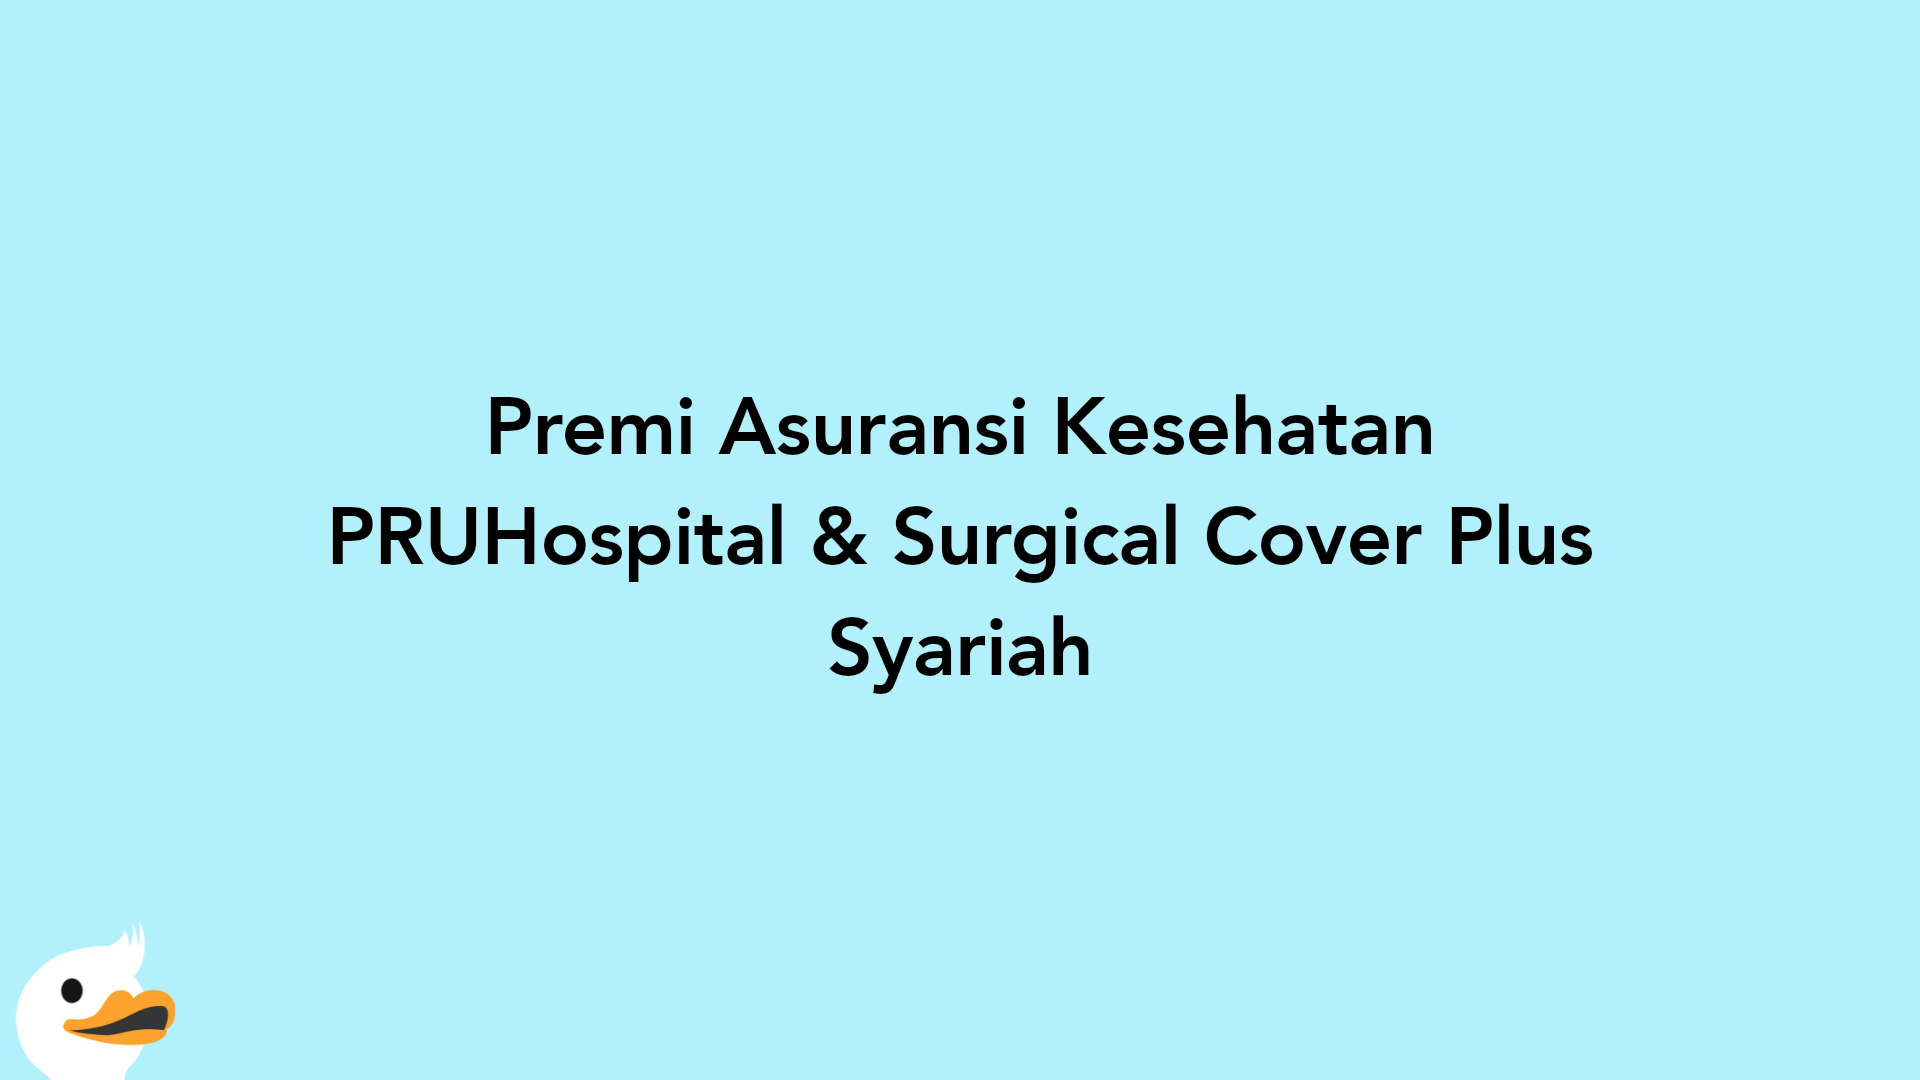 Premi Asuransi Kesehatan PRUHospital & Surgical Cover Plus Syariah